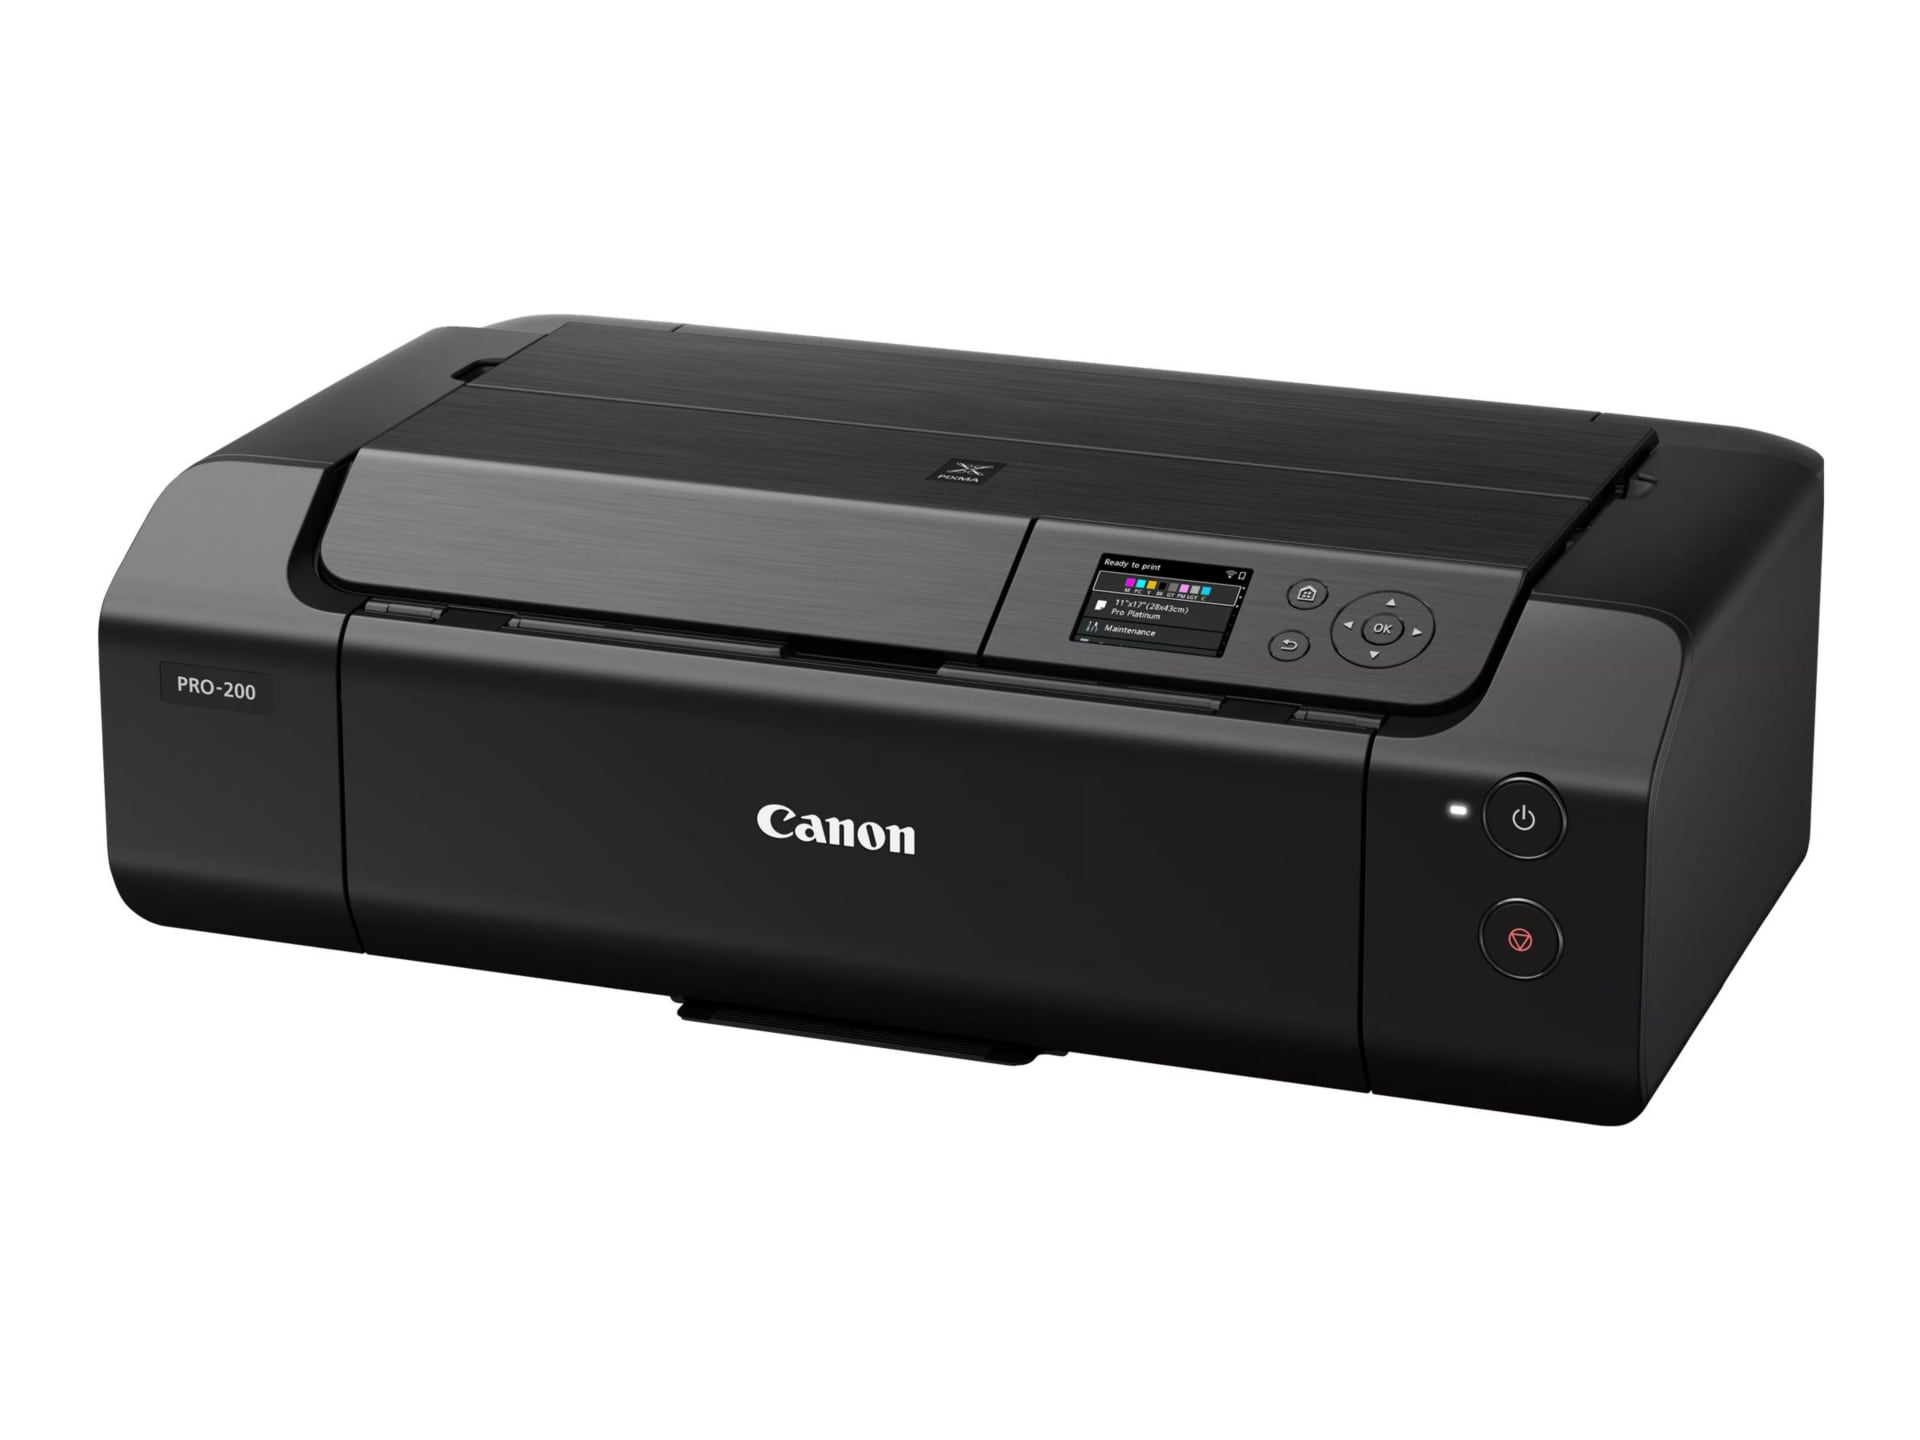 Gå rundt hvor ofte skipper Canon PIXMA PRO-200 - printer - color - ink-jet - 4280C002 - Inkjet Printers  - CDW.com